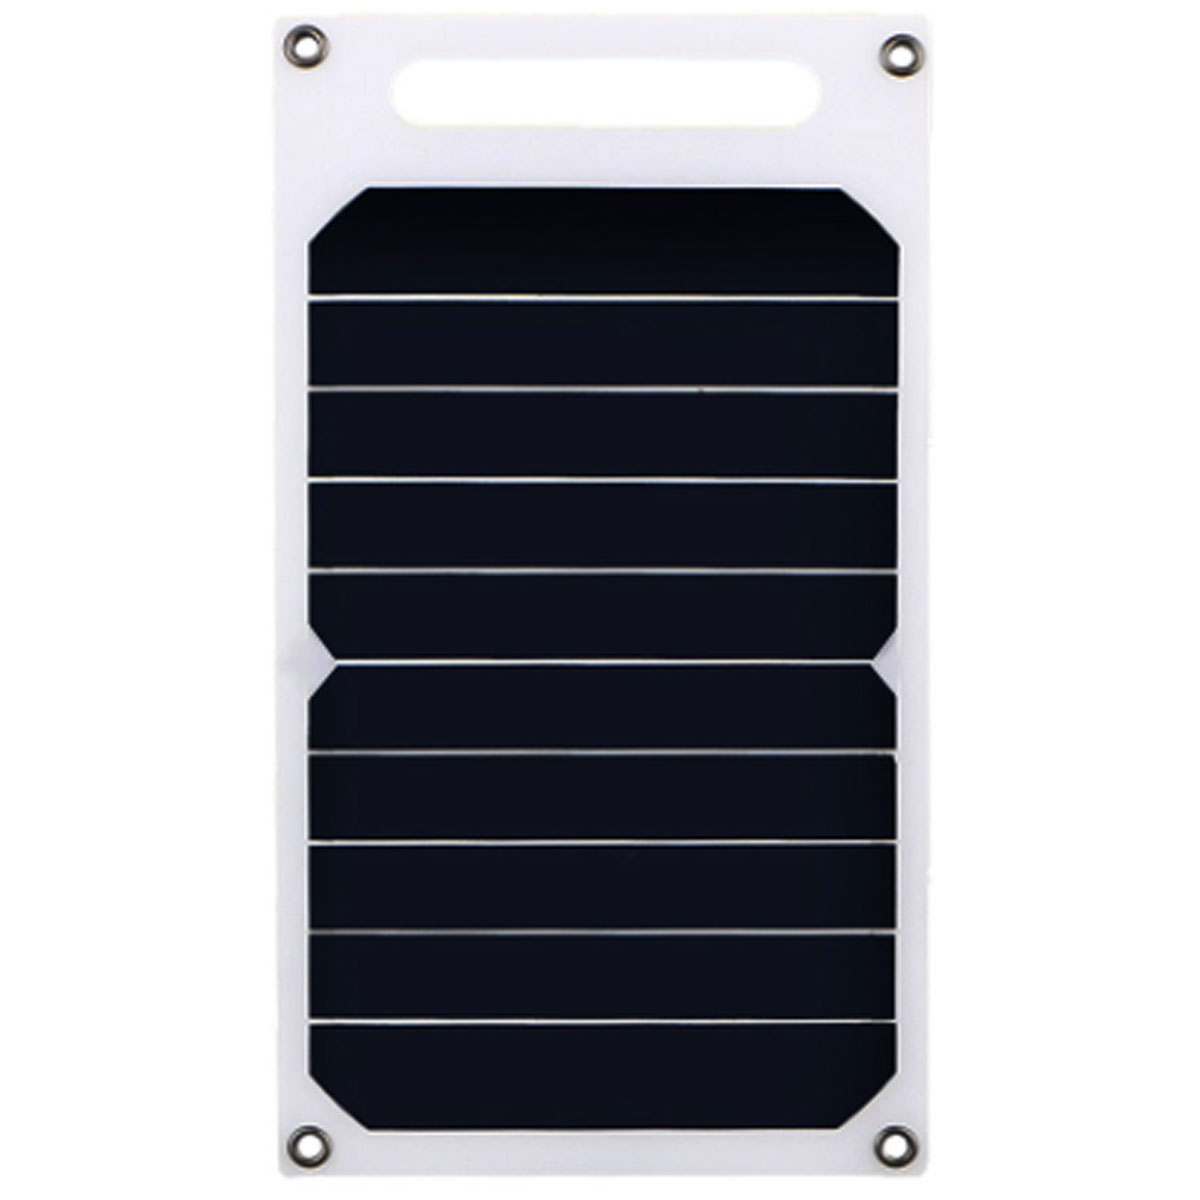 

10 Вт 5V Солнечная Панель Солнечная Зарядное устройство Портативный инвентарь Солнечная Аварийное зарядное устройство